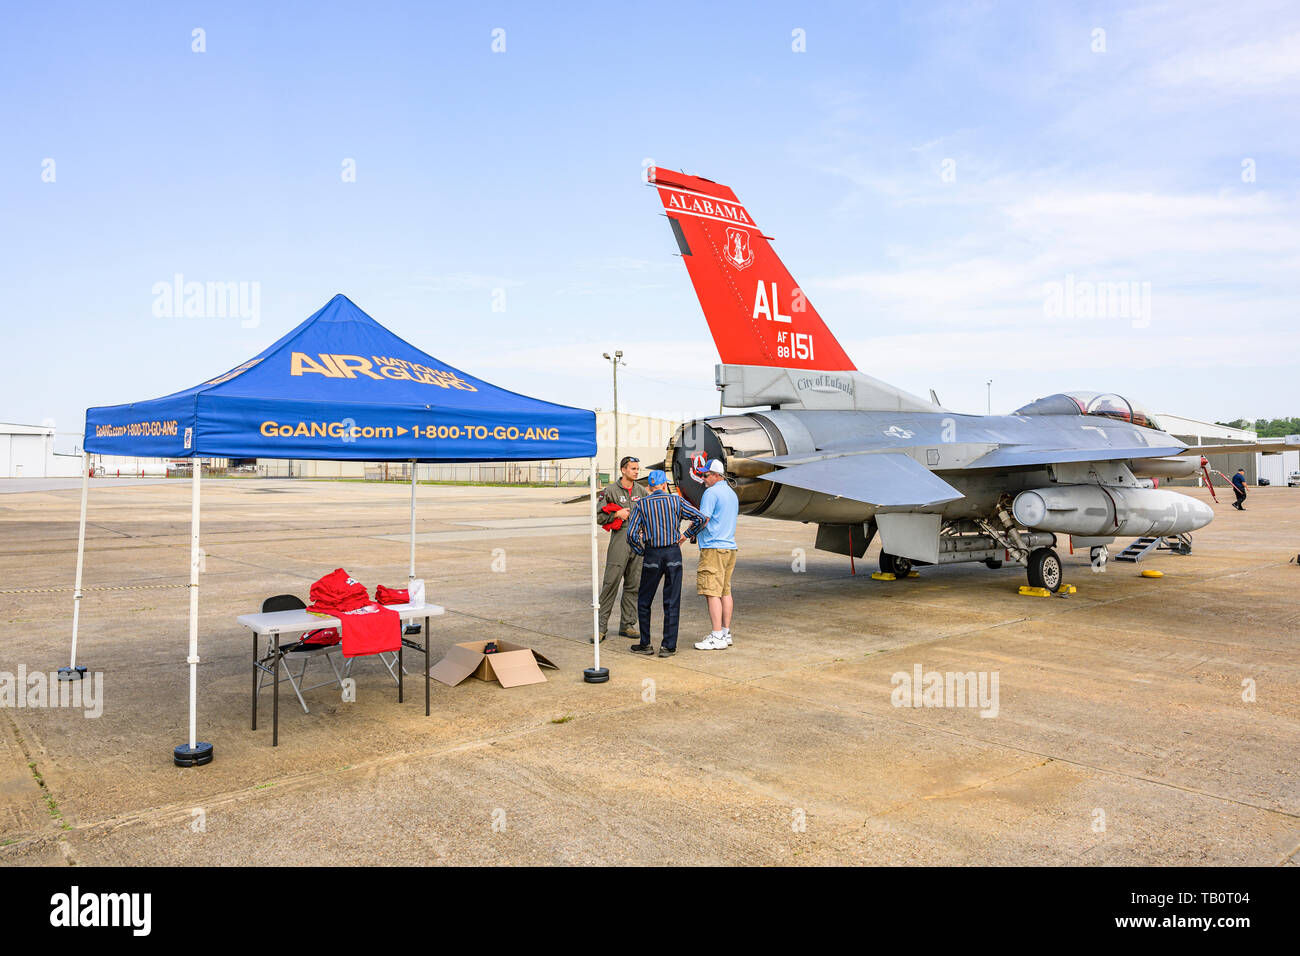 187Th Fighter Wing de la Garde nationale aérienne de l'Alabama, aviateurs, queue rouge Tuskegee pilote de l'escadron de parler avec des visiteurs à côté de son avion de chasse F-16. Banque D'Images